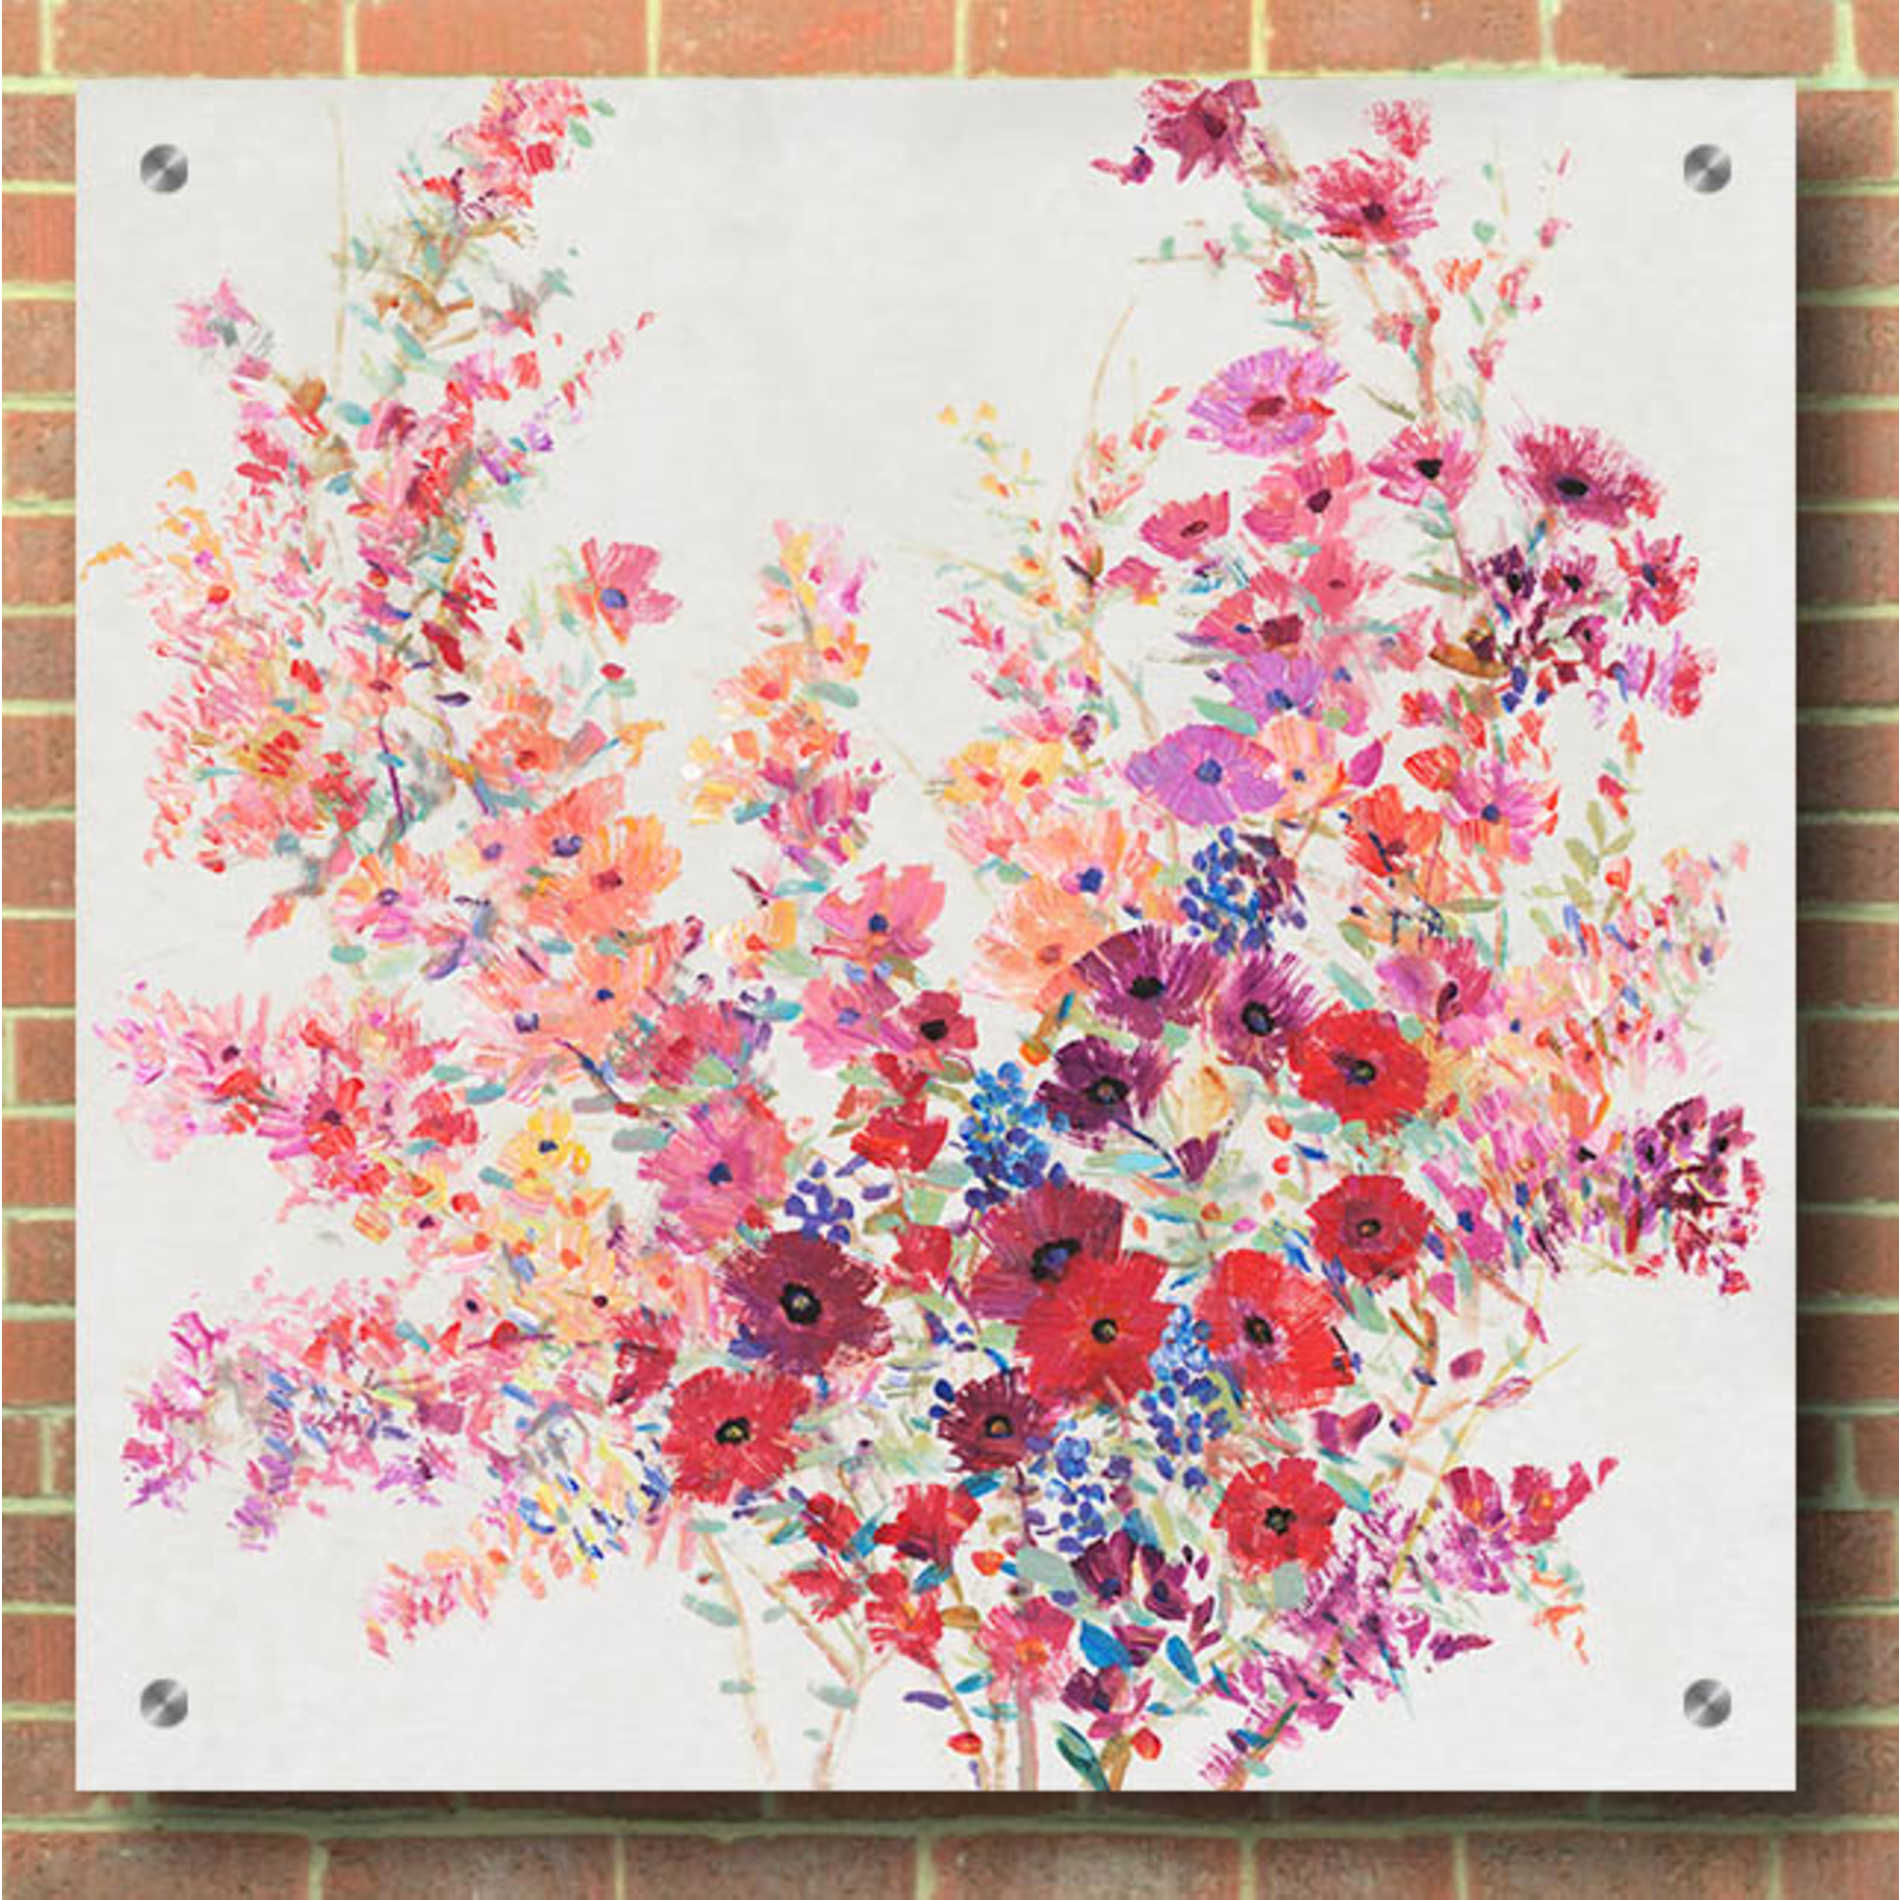 Epic Art 'Flowers on a Vine II' by Tim O'Toole, Acrylic Glass Wall Art,36x36